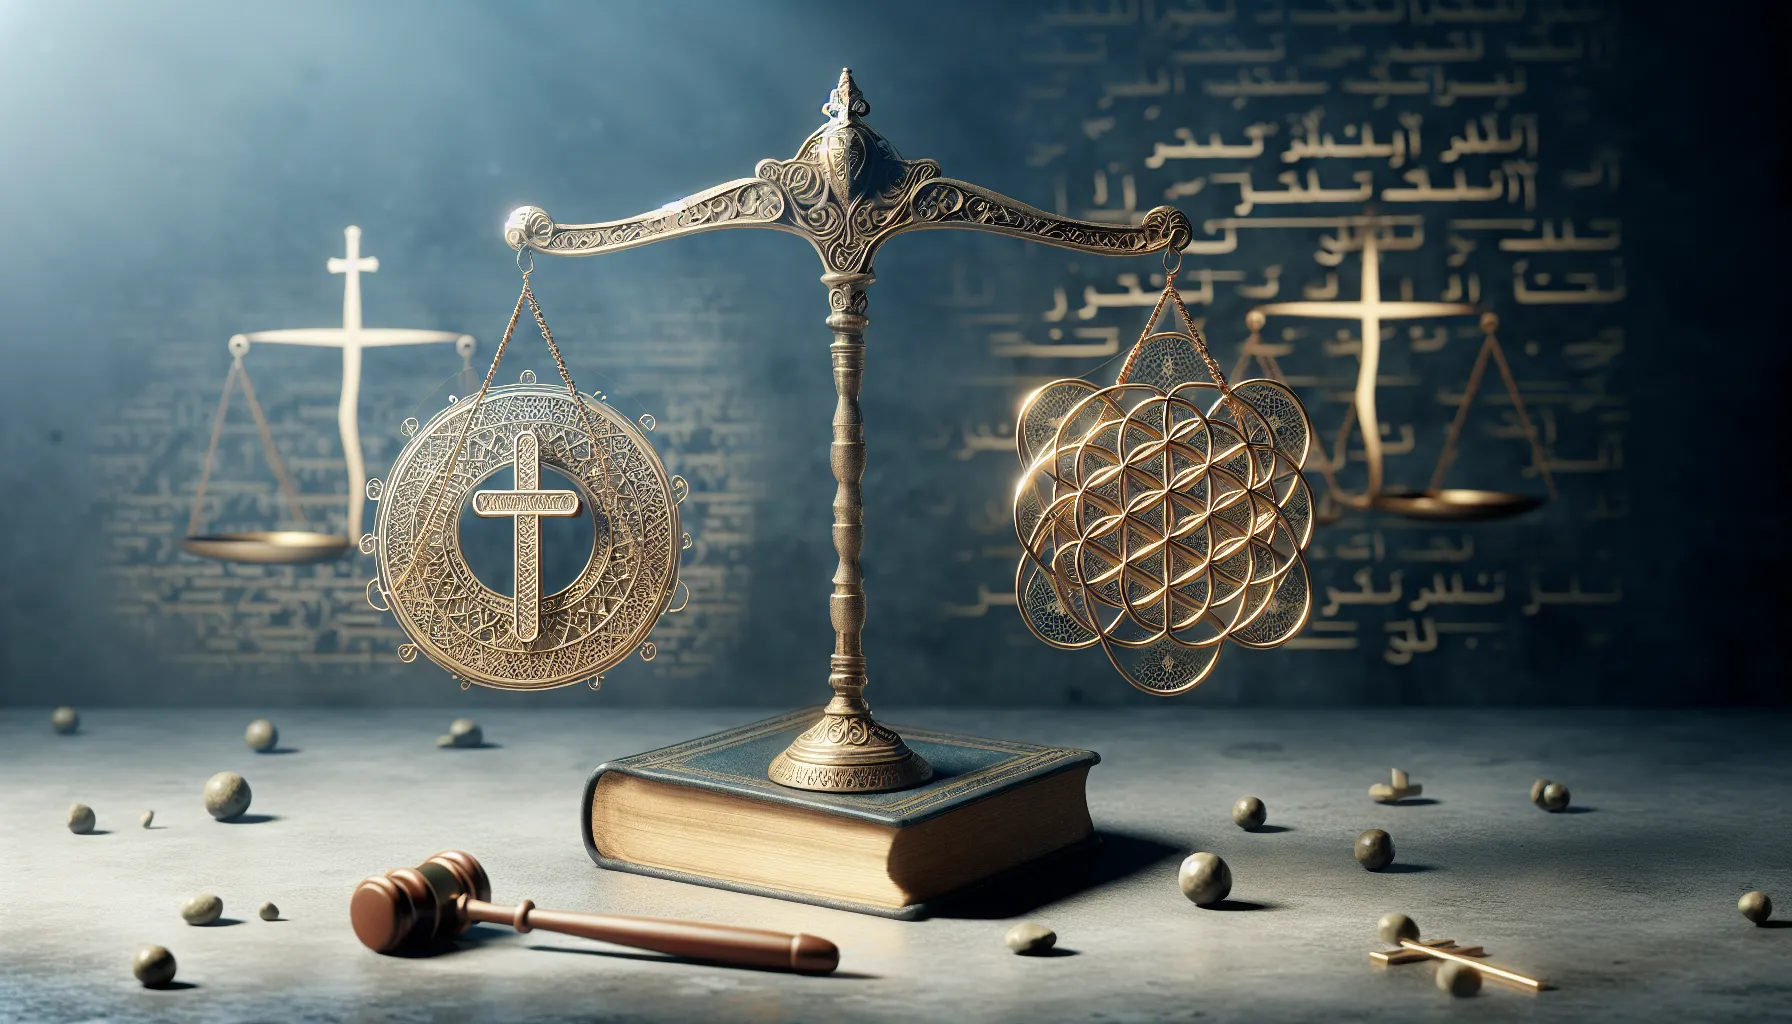 Imagen conceptual que representa la relación entre la justicia divina y la equidad en la fe.